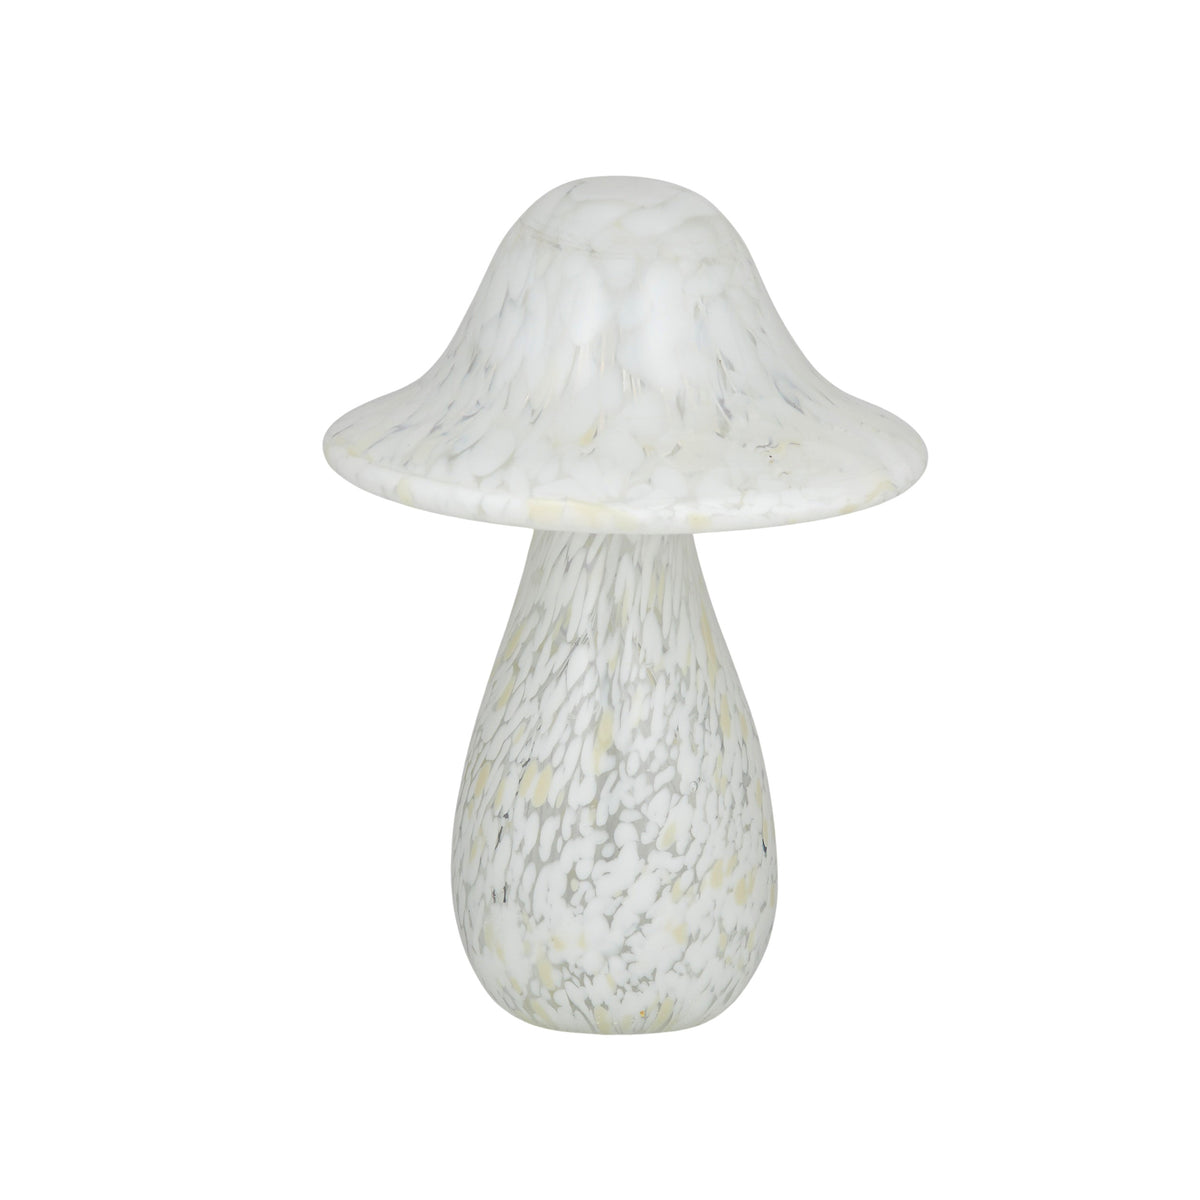 Mottie Mushroom Glass - Large